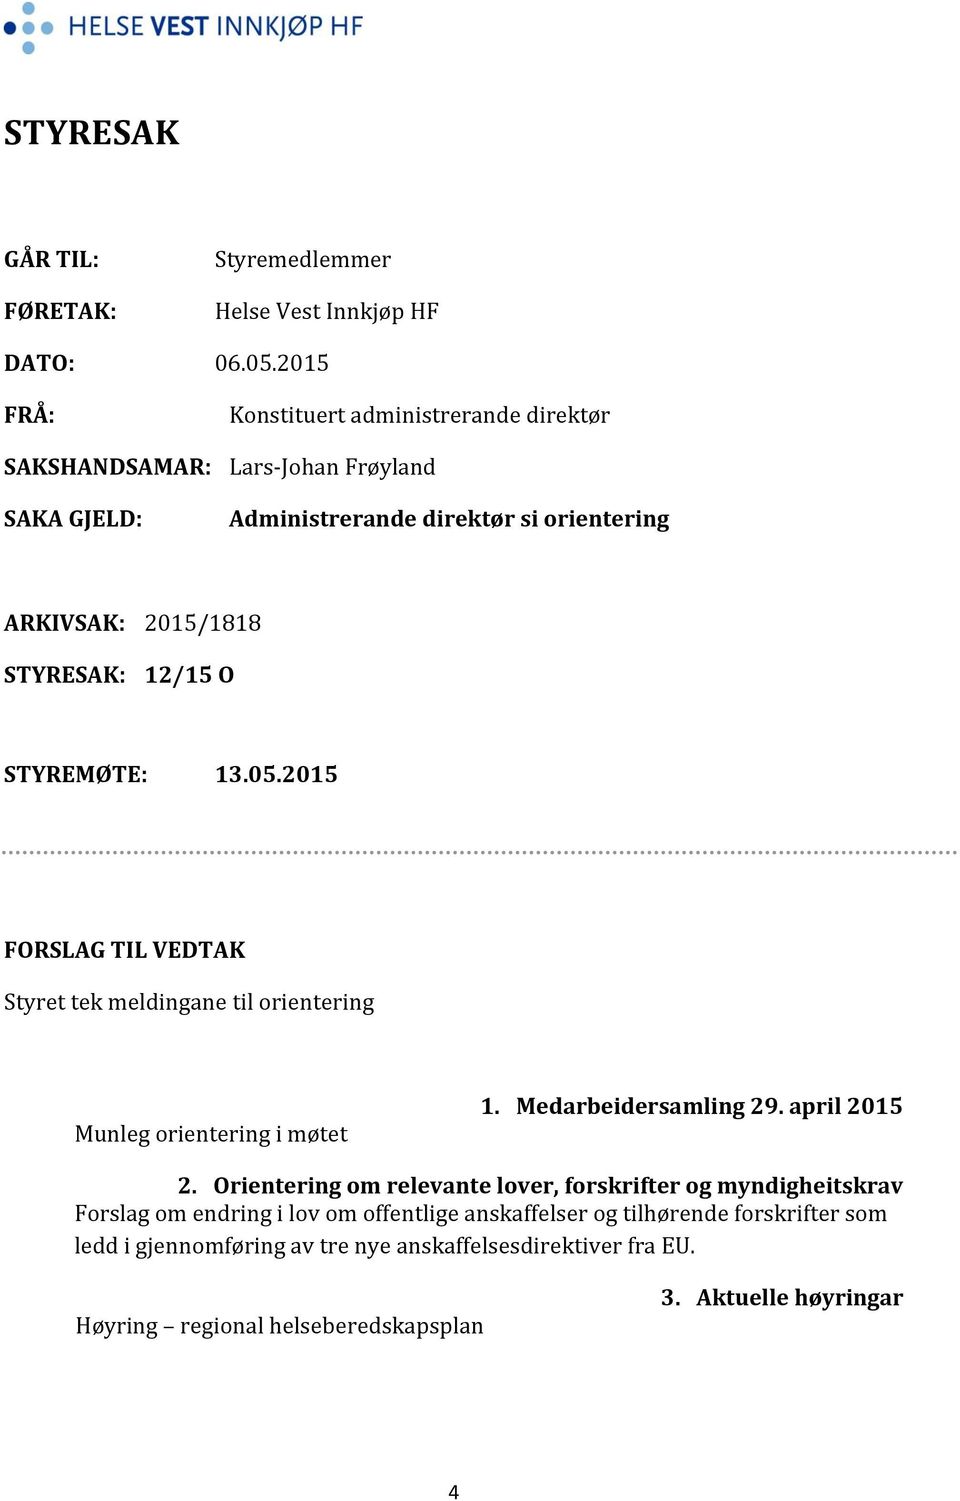 12/15 O STYREMØTE: 13.05.2015 FORSLAG TIL VEDTAK Styret tek meldingane til orientering Munleg orientering i møtet 1. Medarbeidersamling 29. april 2015 2.